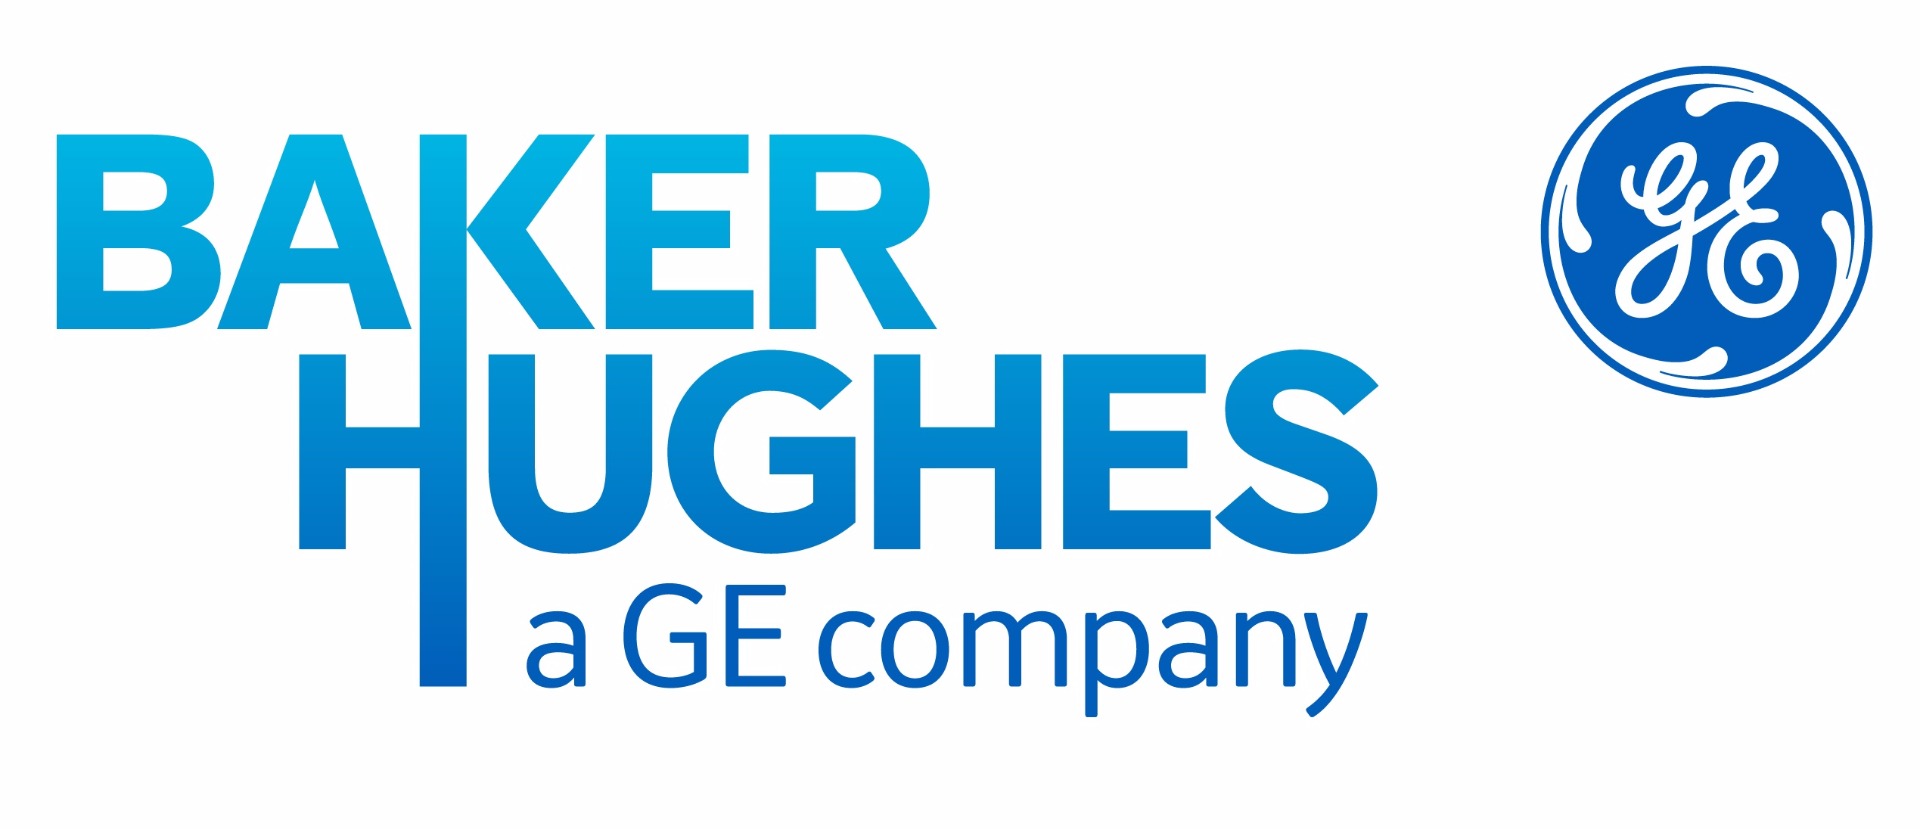 baker-hughes-ge-logo.jpg